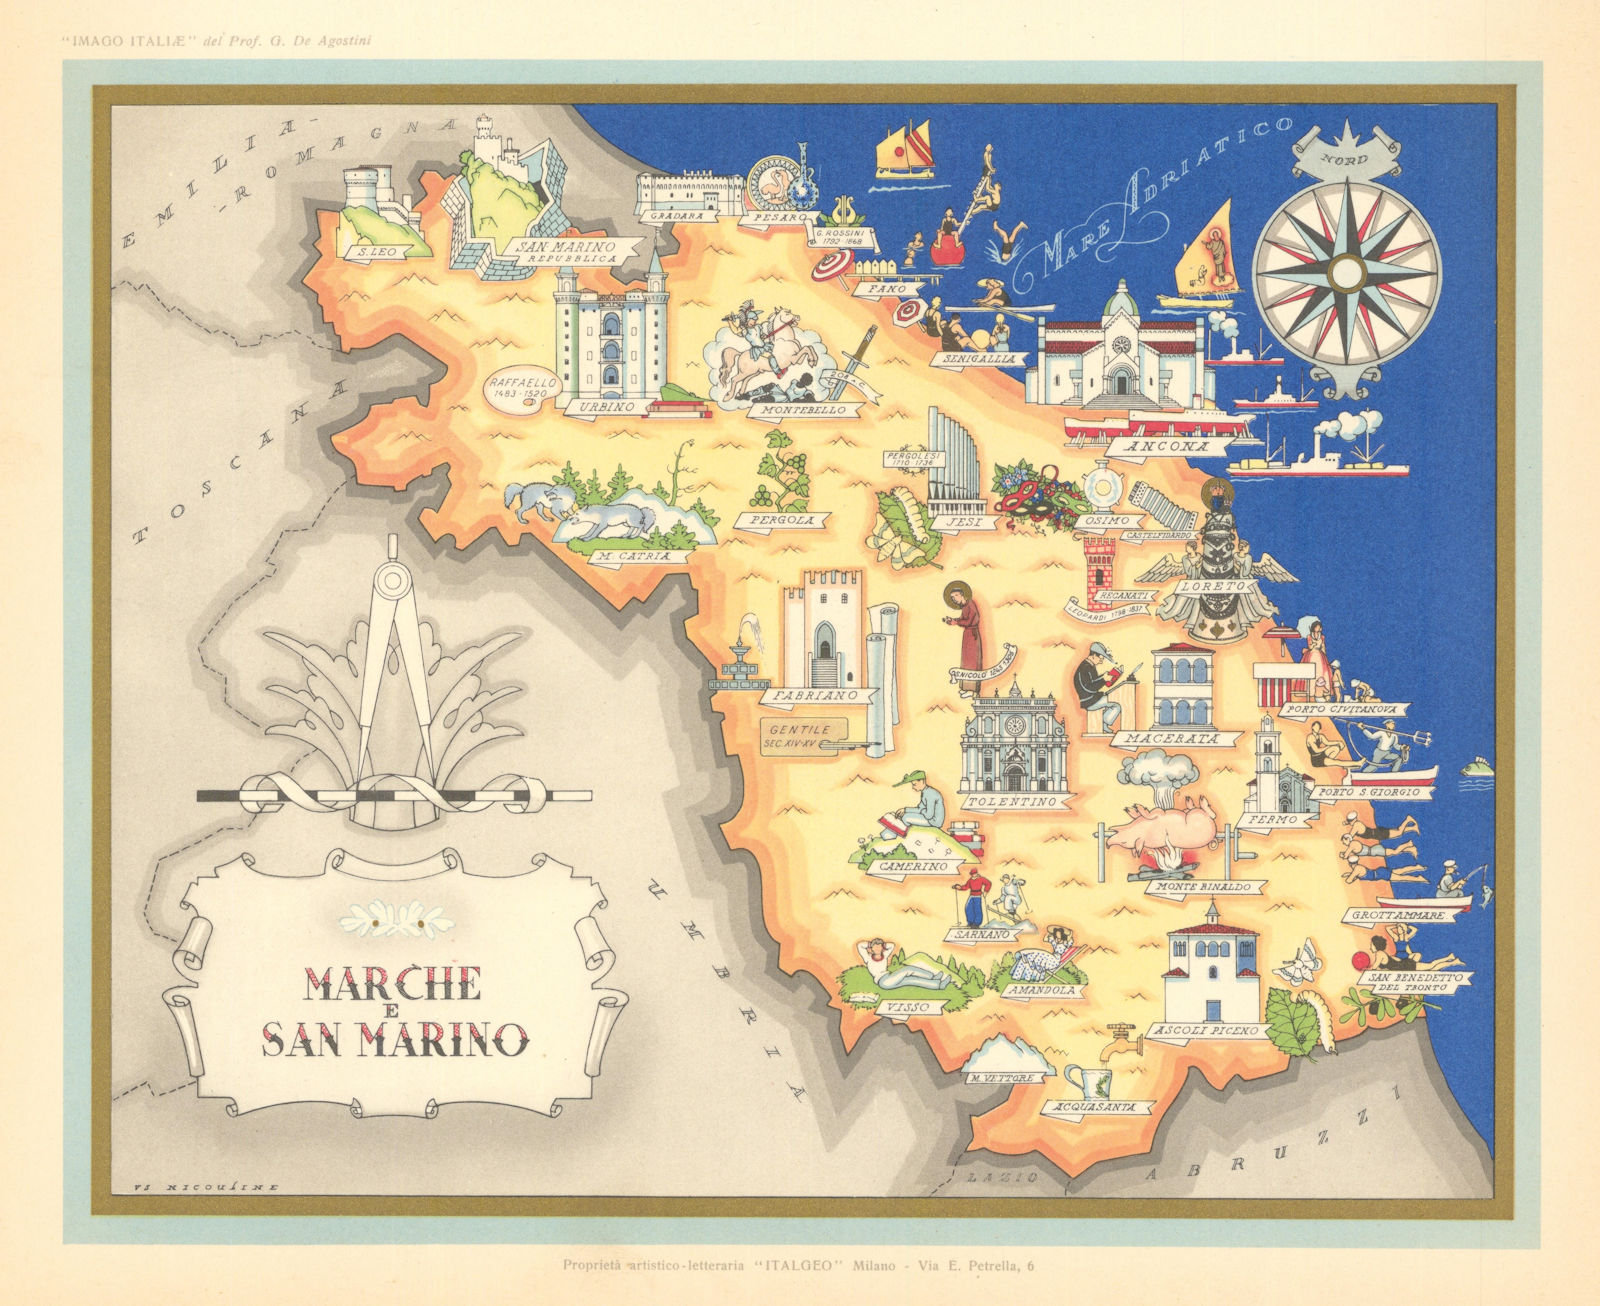 Marche e San Marino pictorial map by Vsevolode Nicouline. Italgeo/Agostini c1950